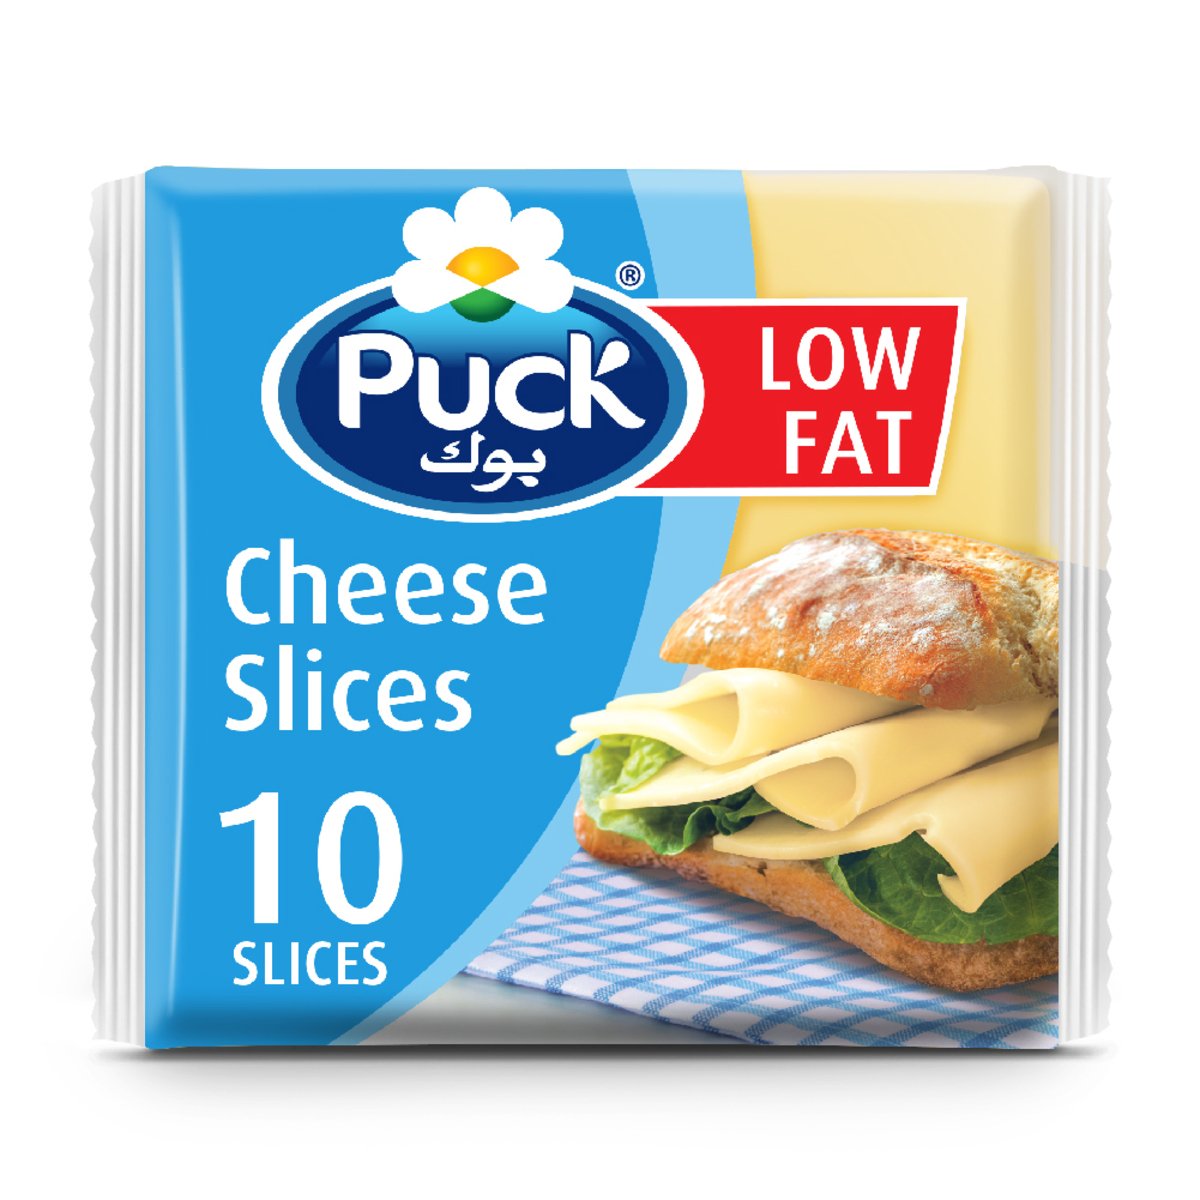 اشتري قم بشراء بوك جبنة 10 شرائح قليلة الدسم 200 جم Online at Best Price من الموقع - من لولو هايبر ماركت Sliced Cheese في الامارات